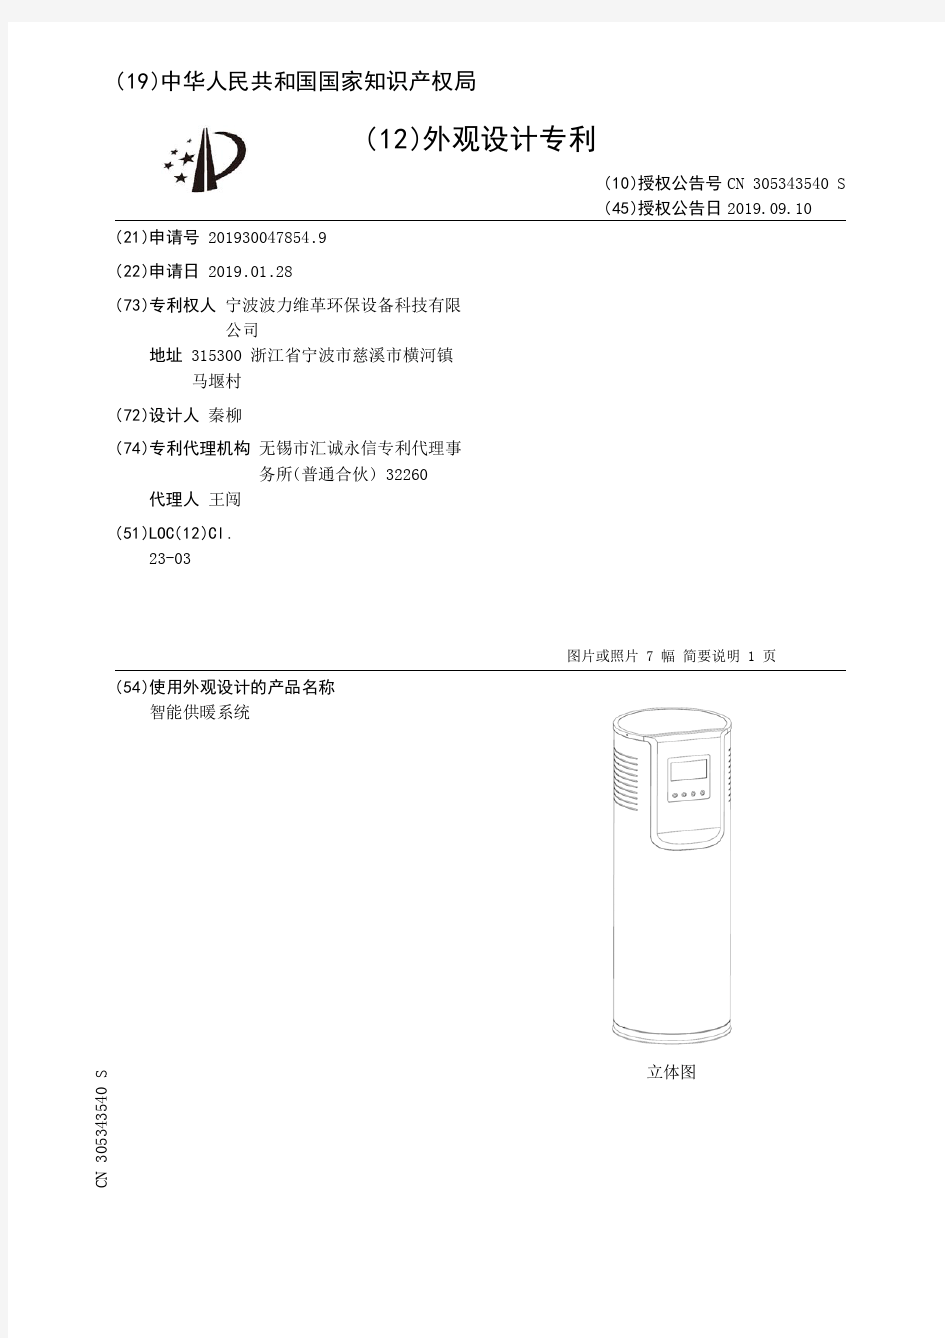 【CN305343540S】智能供暖系统【专利】